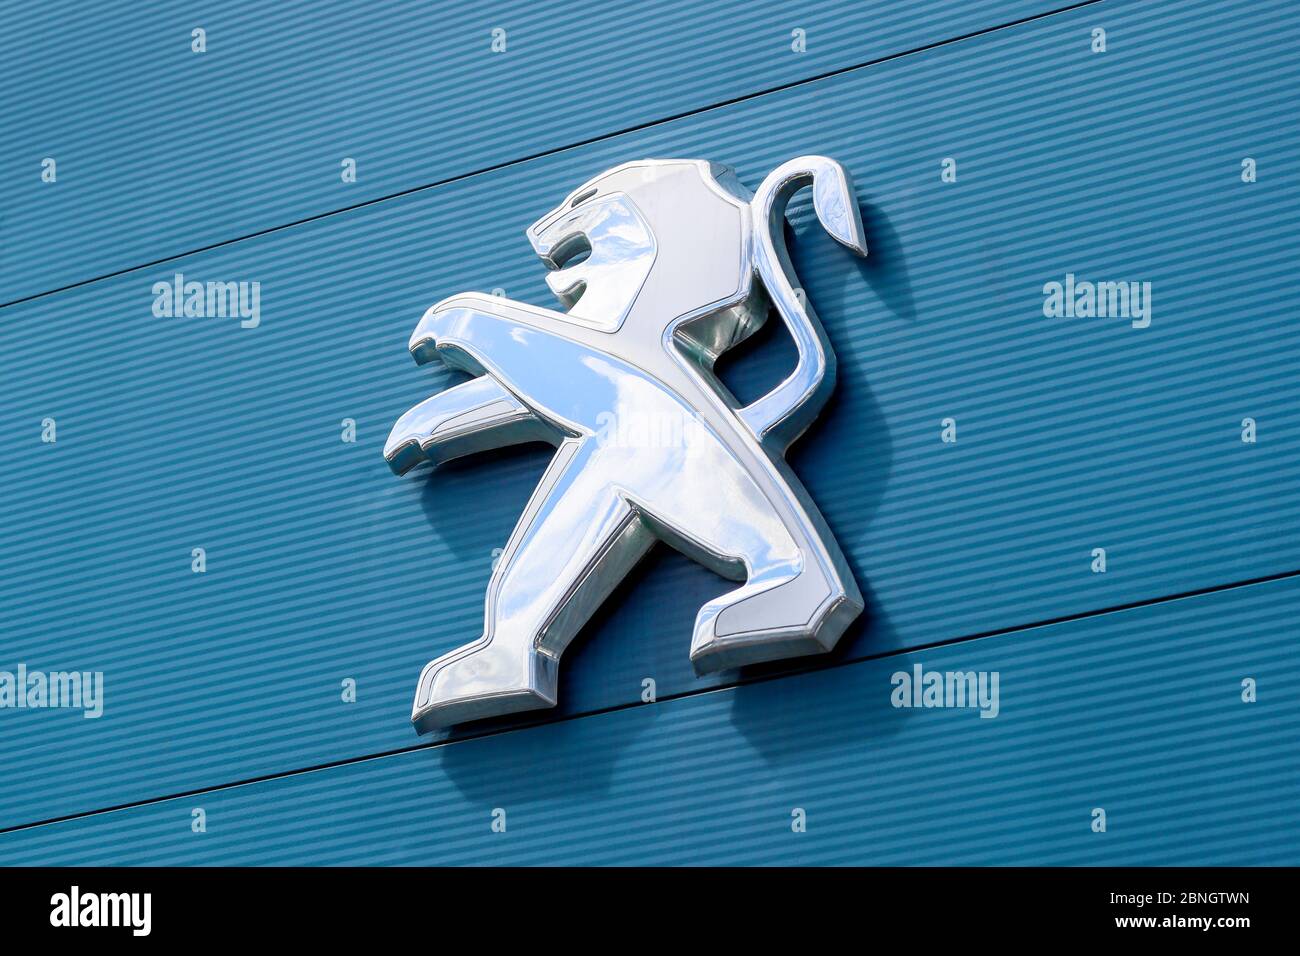 Peugeot Firmenlogo auf dem Auto. Peugeot ist eine französische  Automobilmarke von Stellantis. Lion-Logo auf dem Auto Stockfotografie -  Alamy